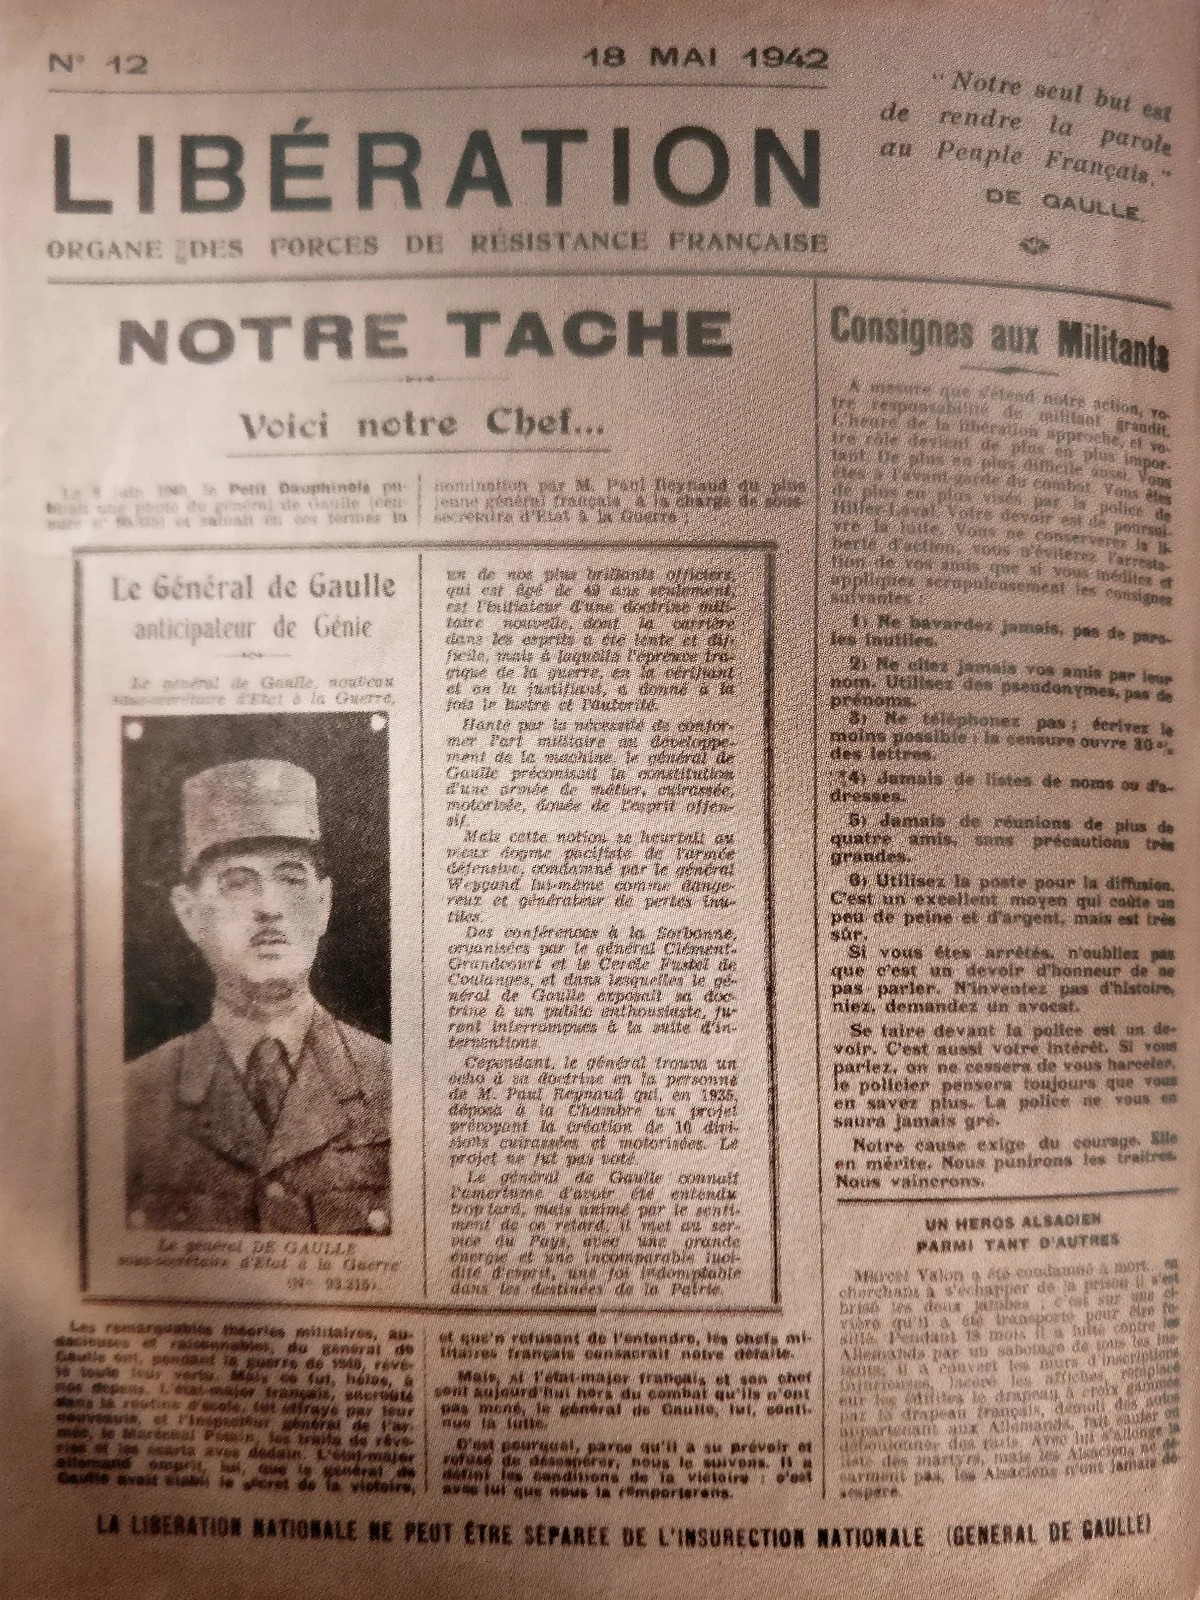 Mars 1944. Numéro de Libération du 18 mai 1942 présentant pour la première fois le Général De Gaulle.